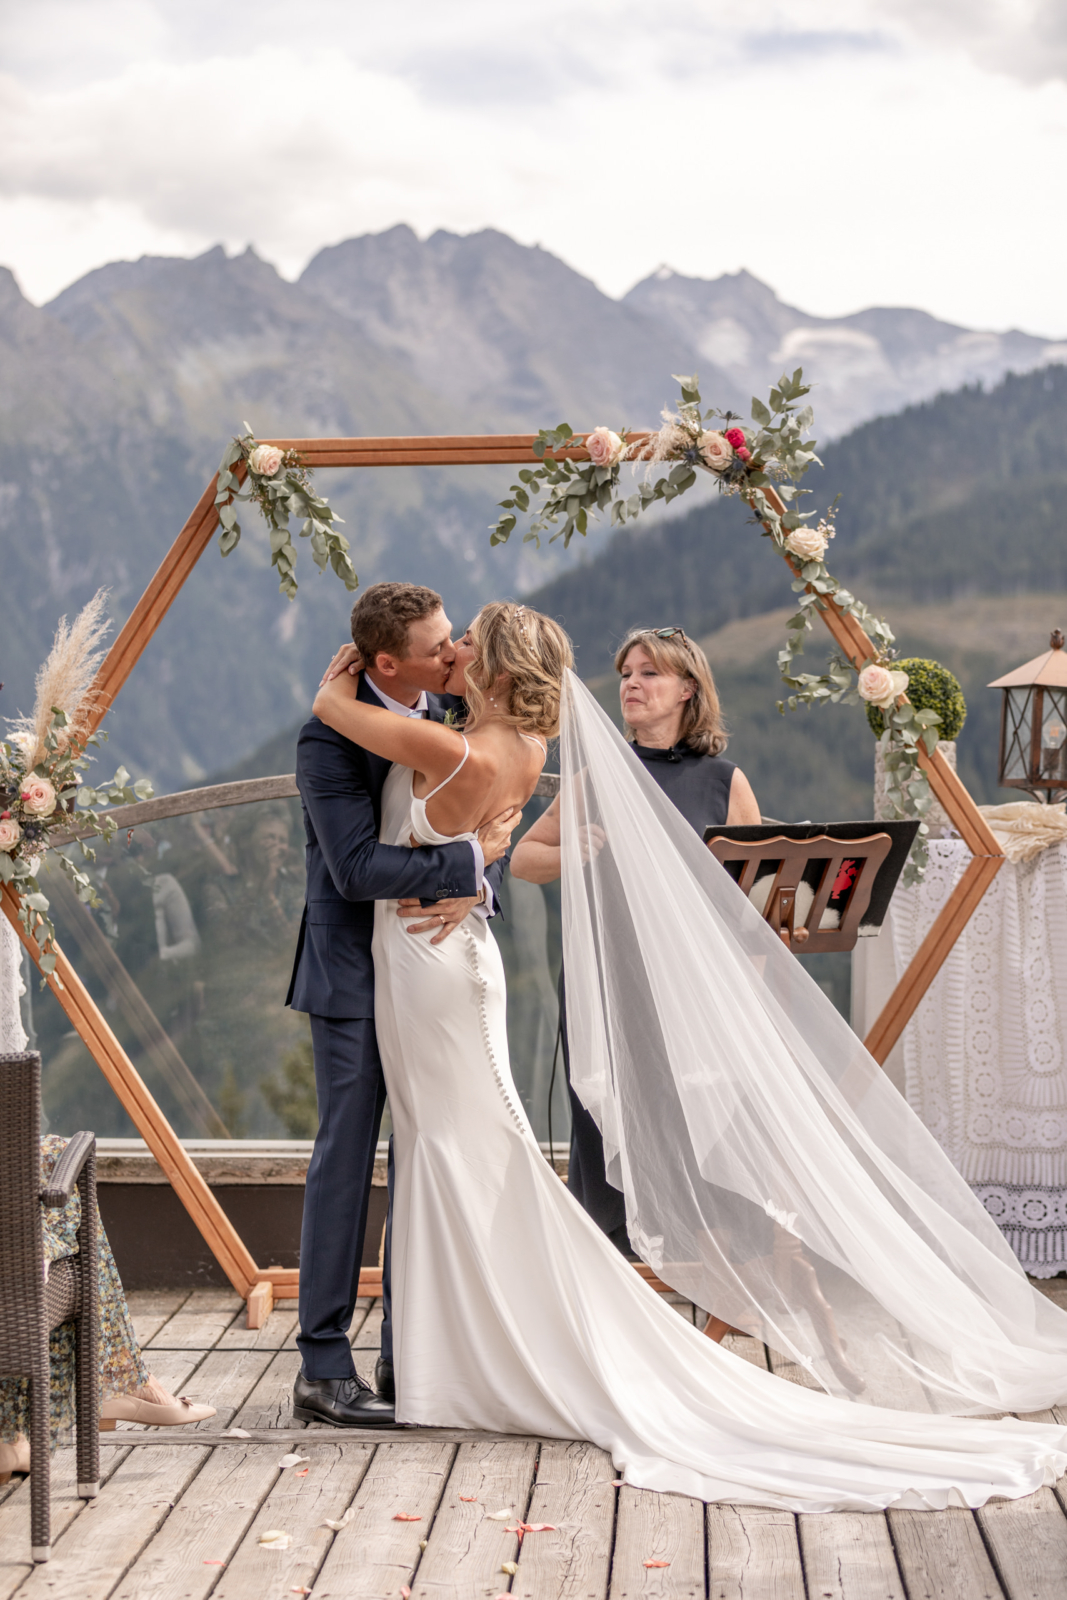 Erster Kuss bei der Hochzeit in den Bergen